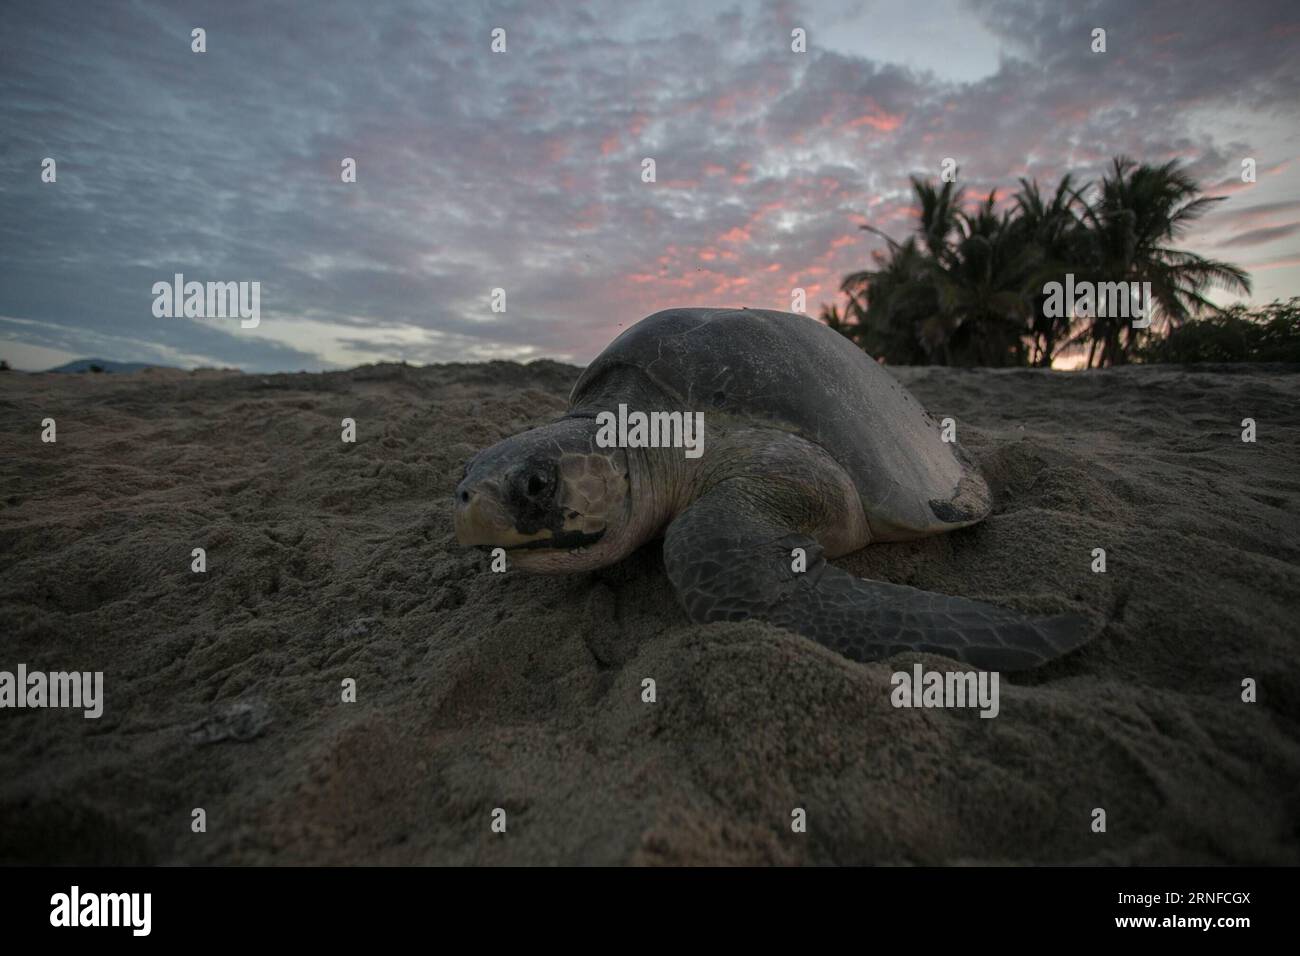 (160801) -- MICHOACAN, 1 agosto 2016 -- una tartaruga ridley oliva è stata vista sulla spiaggia di Ixtapilla nello stato di Michoacan, Messico, il 31 luglio 2016. Alla fine di luglio, migliaia di tartarughe di olivo ridley hanno strisciato lungo la costa del Pacifico per riprodursi, soprattutto negli stati di Michoacan e Oaxaca. Armando Solis)(zcc) MESSICO-MICHOACAN-AMBIENTE-FAUNA ArmandoxSol¨ªs PUBLICATIONxNOTxINxCHN 160801 Michoacan 1 agosto 2016 a Olive Ridley Turtle IS Lakes SULLA spiaggia di Ixtapilla nello Stato di Michoacan Messico IL 31 2016 luglio ALLA fine di luglio migliaia di tartarughe Olive Ridley hanno strisciato attraverso il Pa Foto Stock